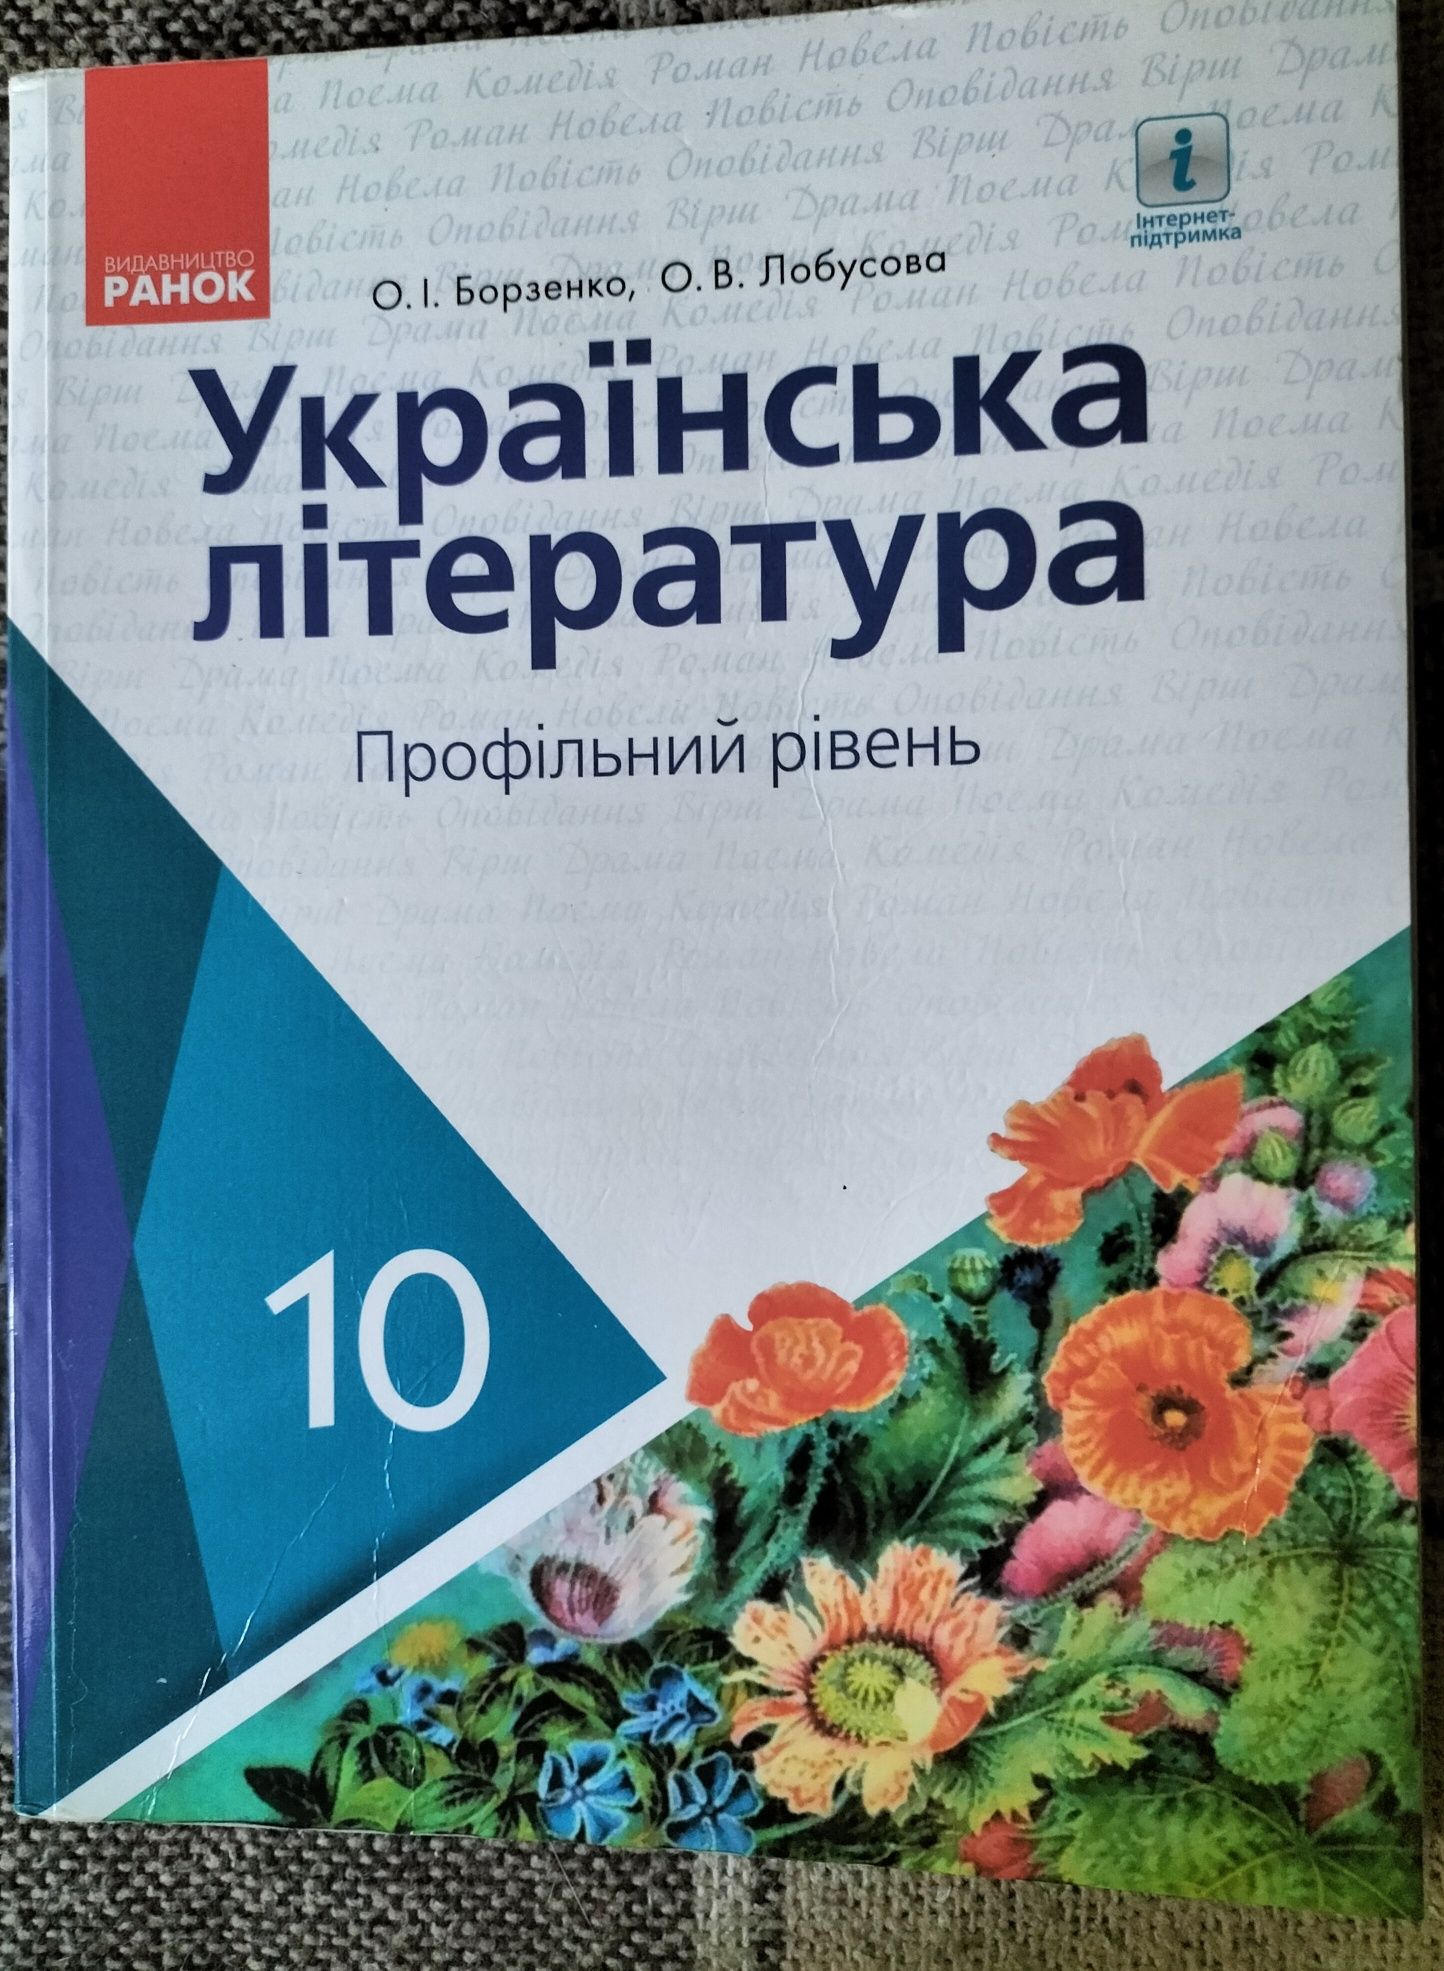 Підручник з української літератури (профільний рівень)10 клас